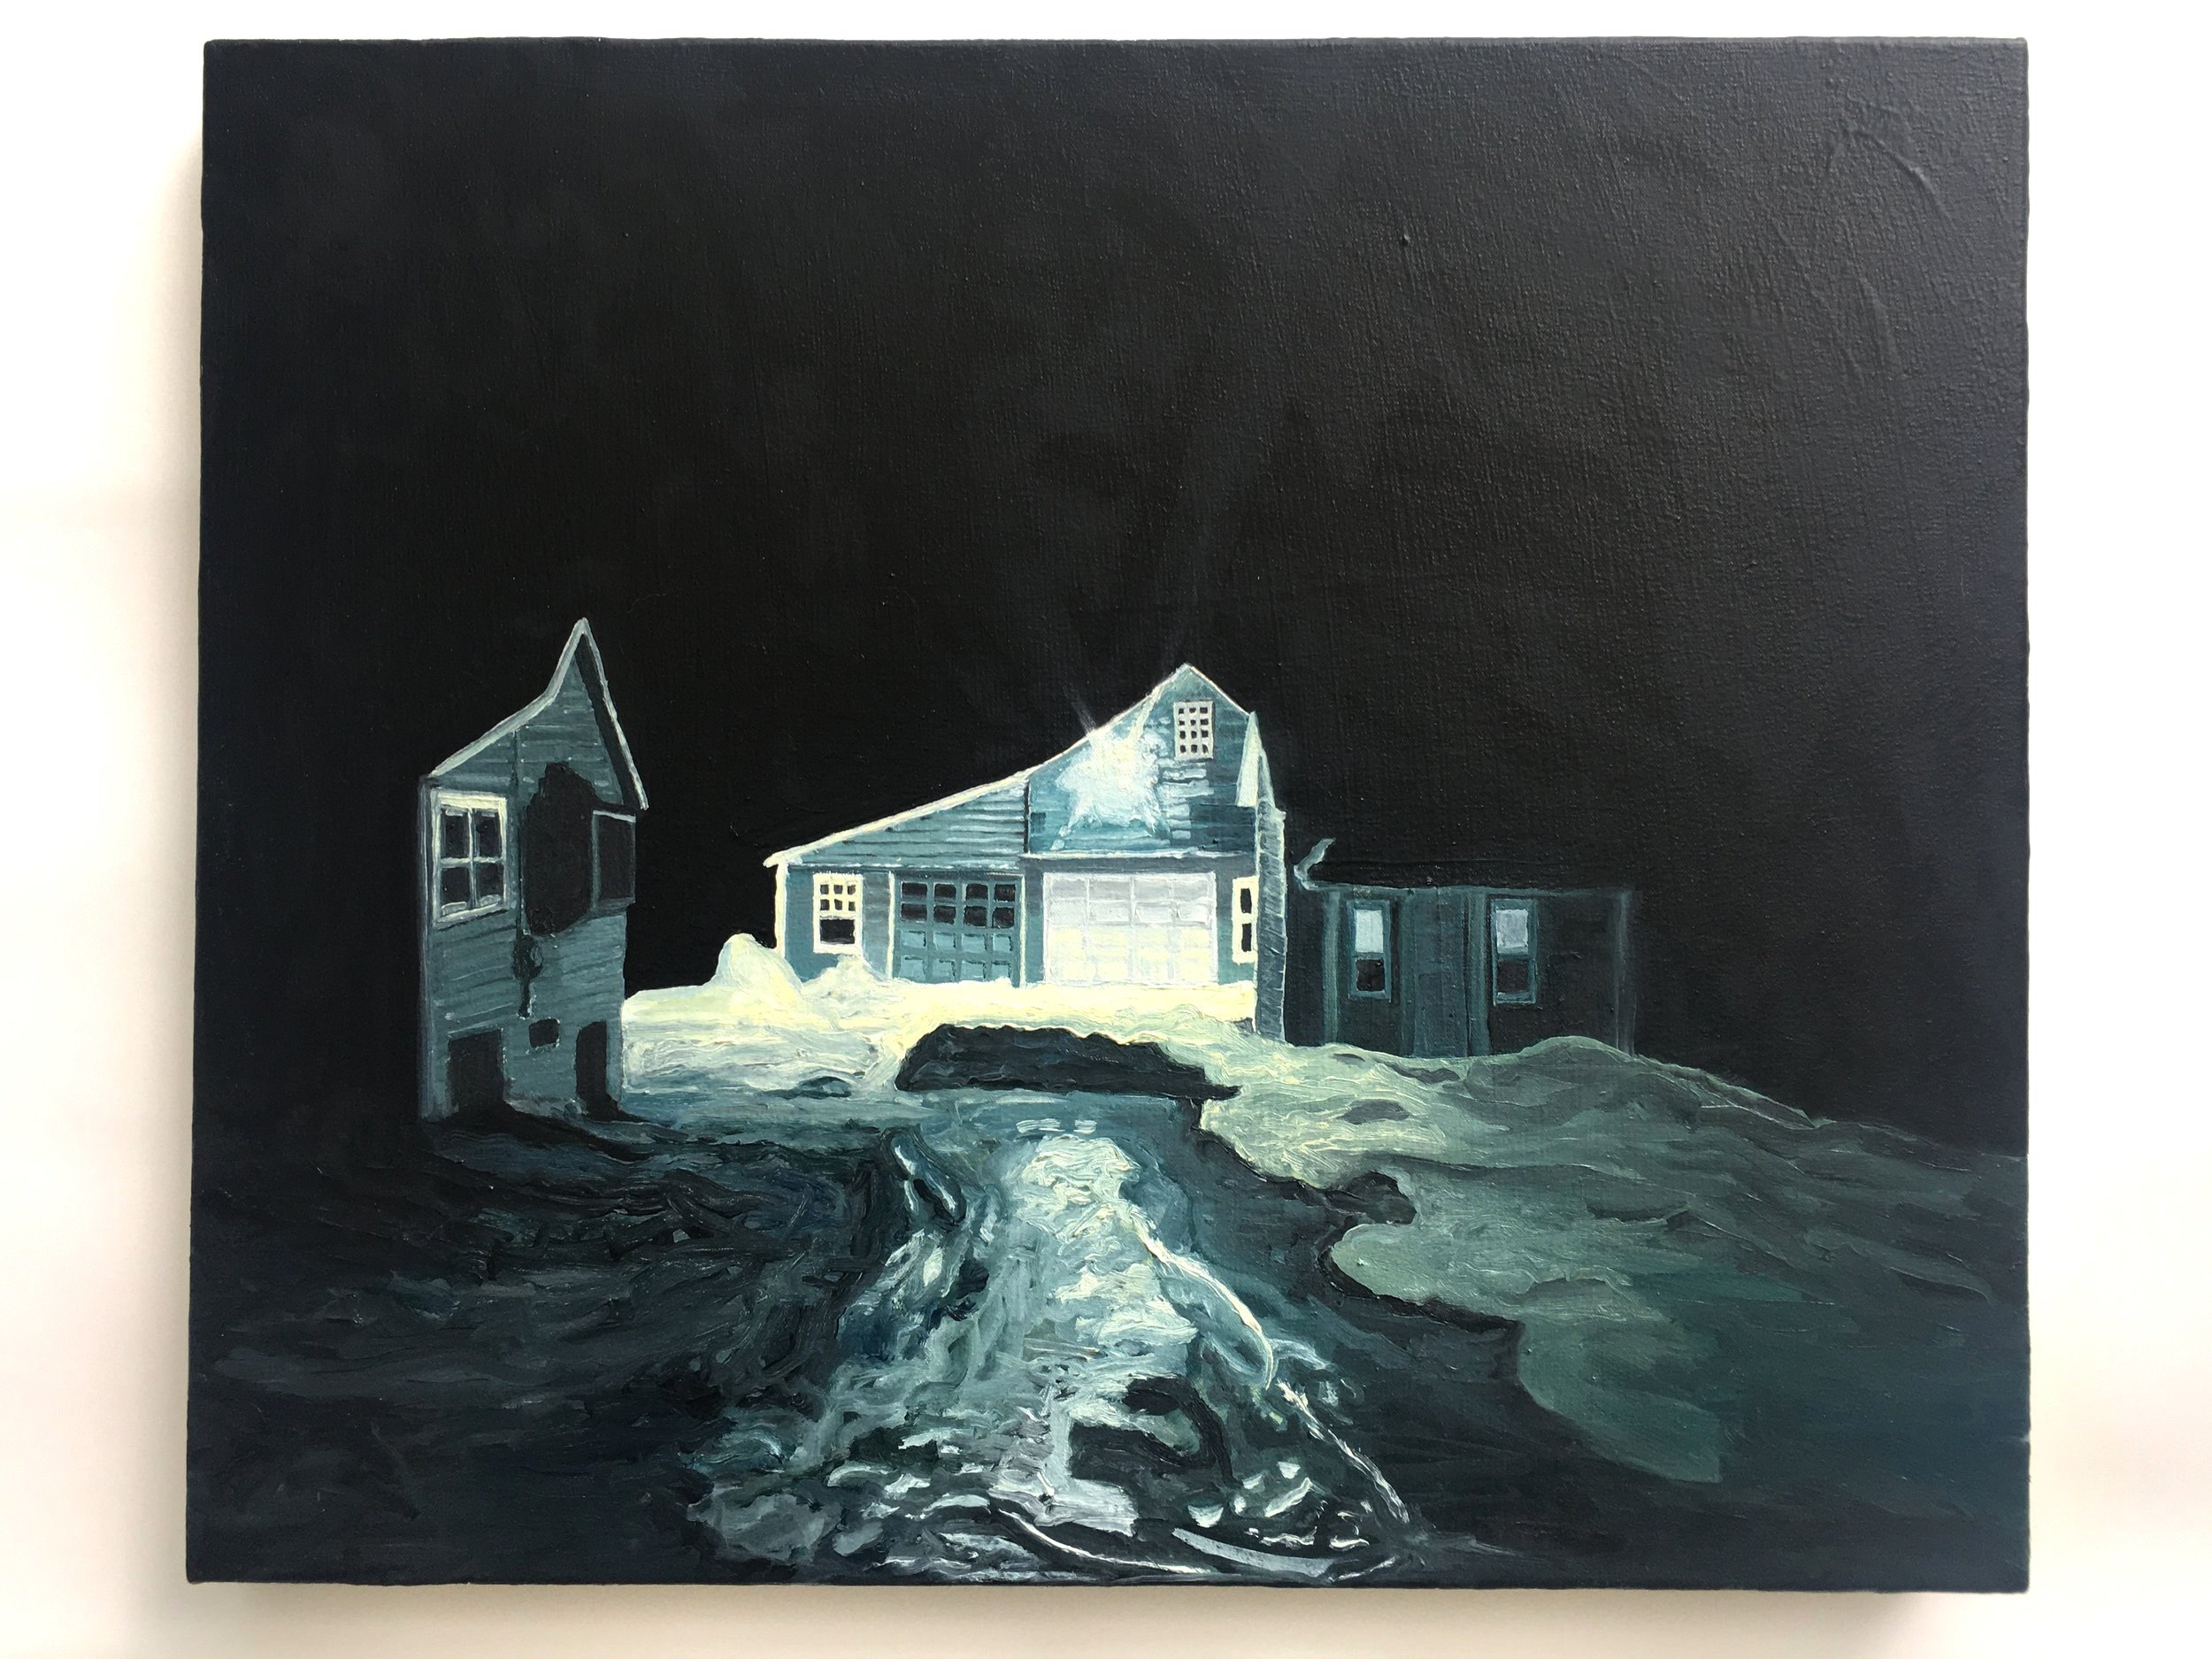   The Britton Compound,  Oil on Canvas, 22” x 26”, 2021 